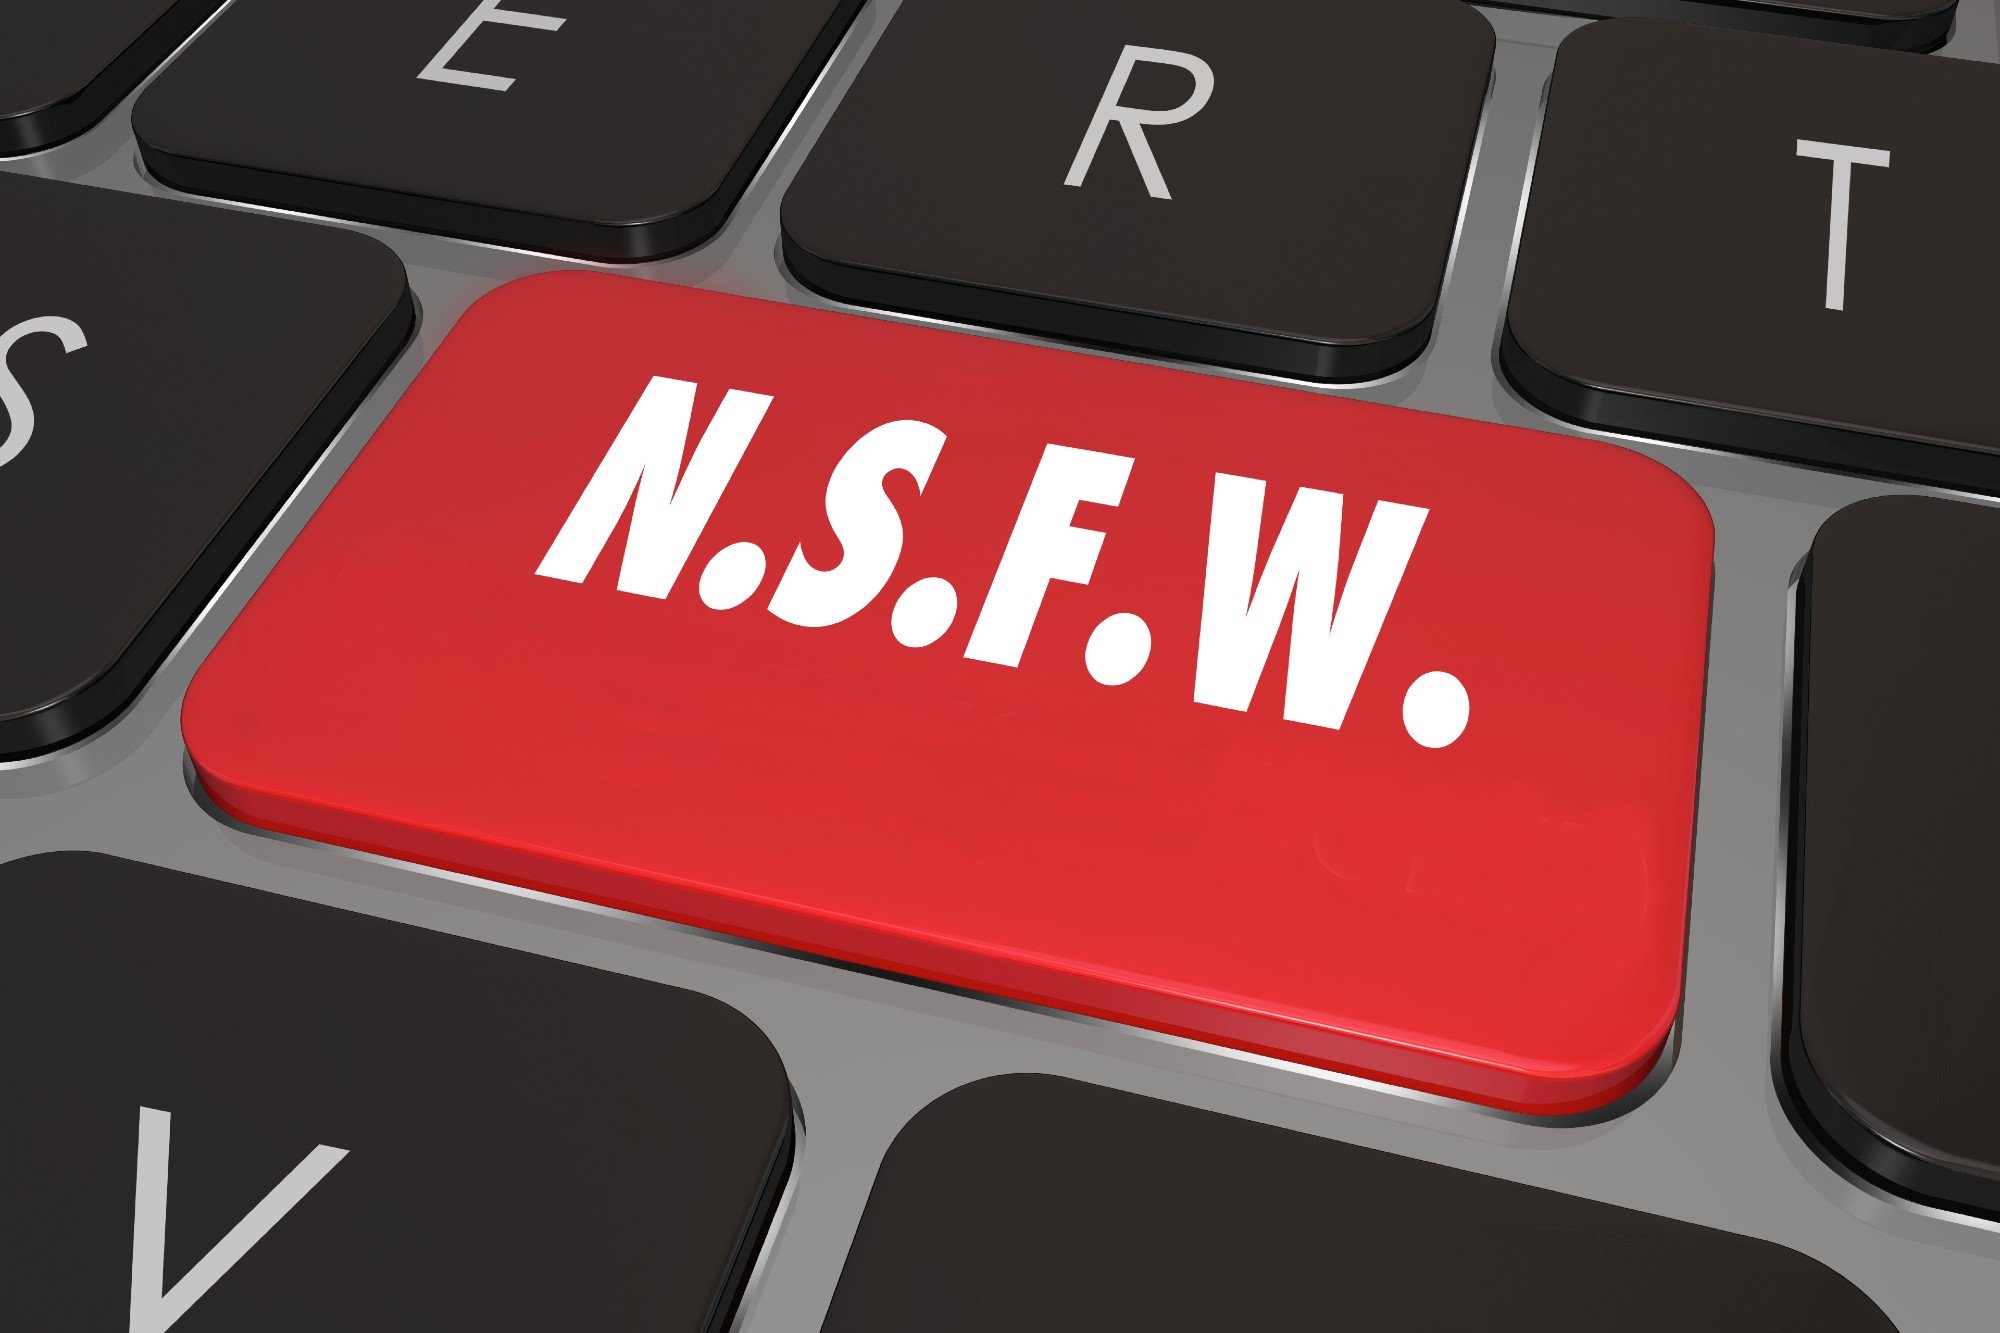 NSFW. ¿Qué es y por qué se usa? — Steemit